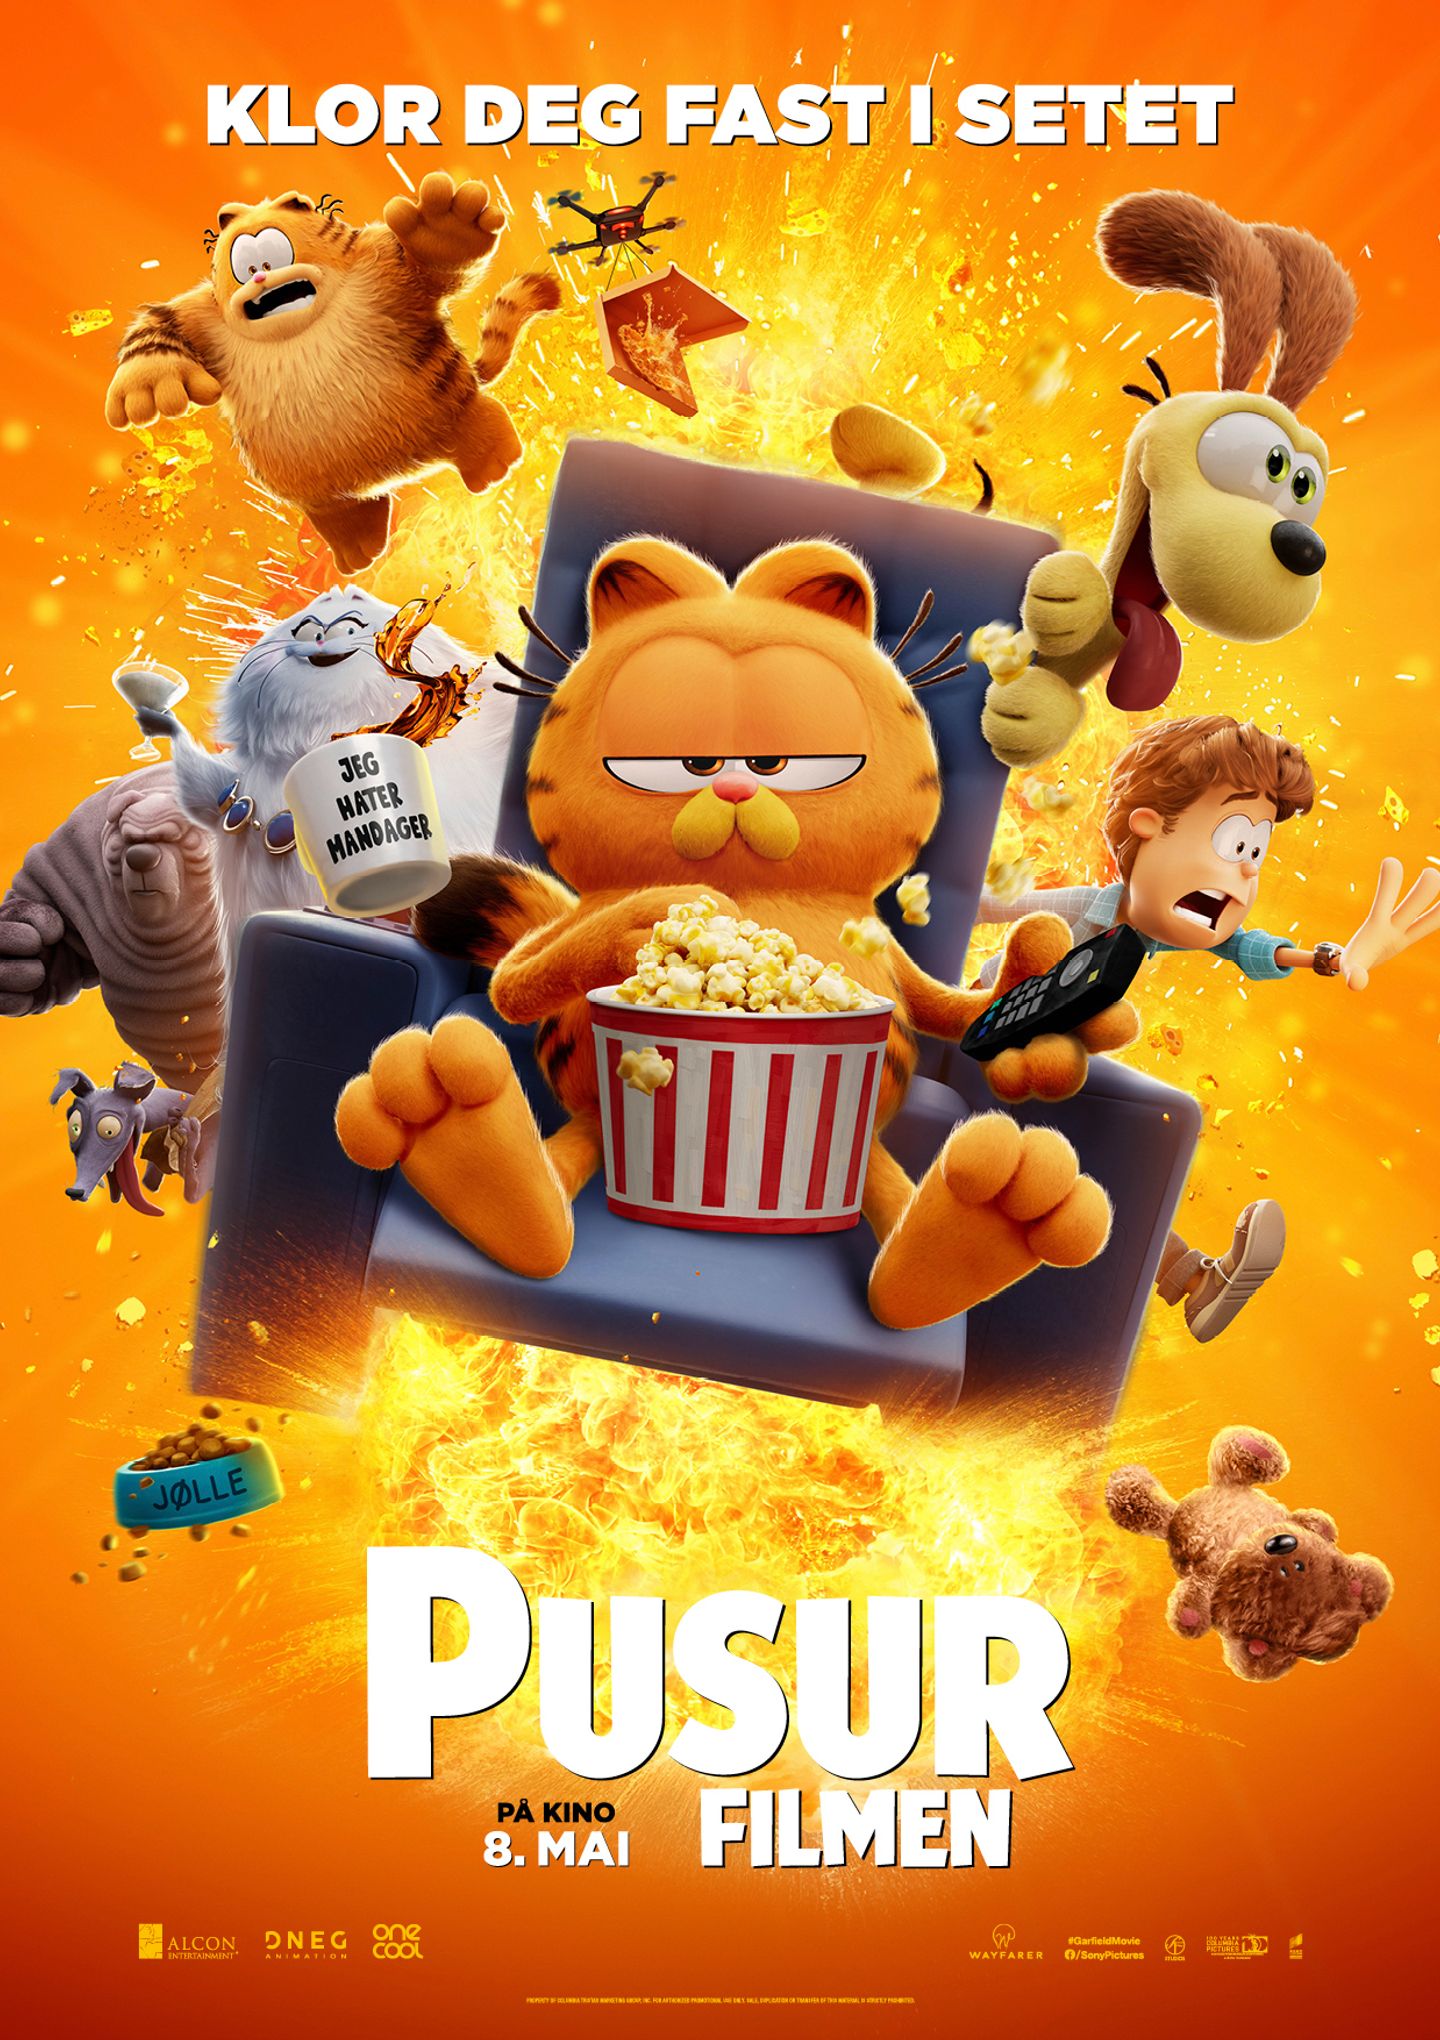 Plakat for 'Pusur-filmen'